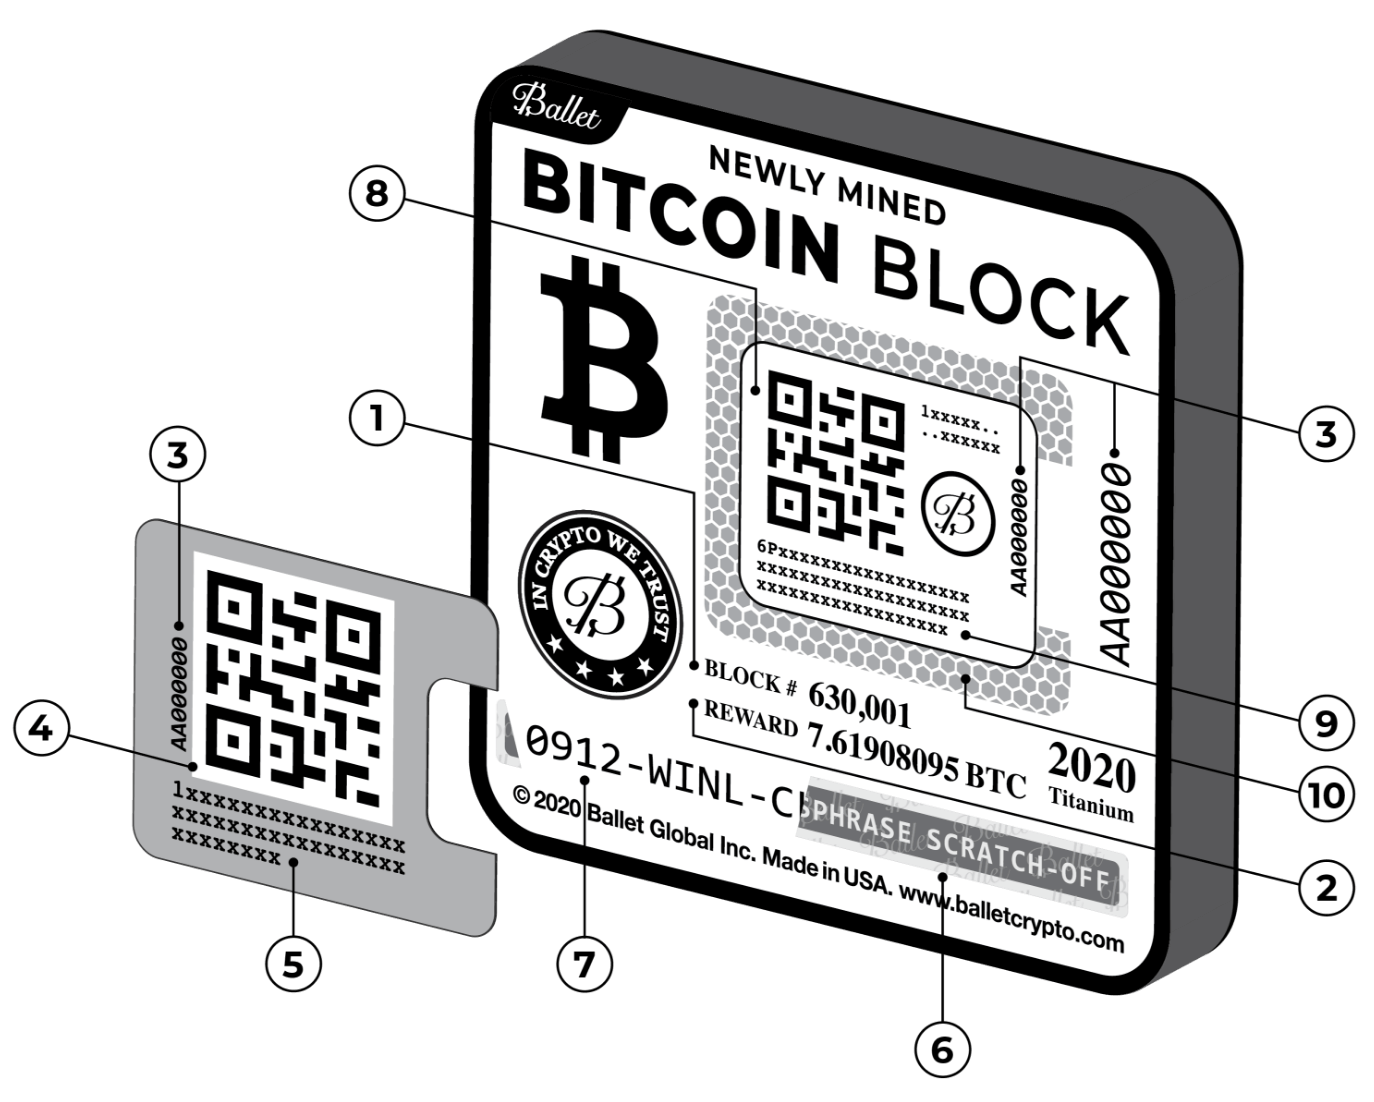 Как выглядит блок bitcoin ethereum chat